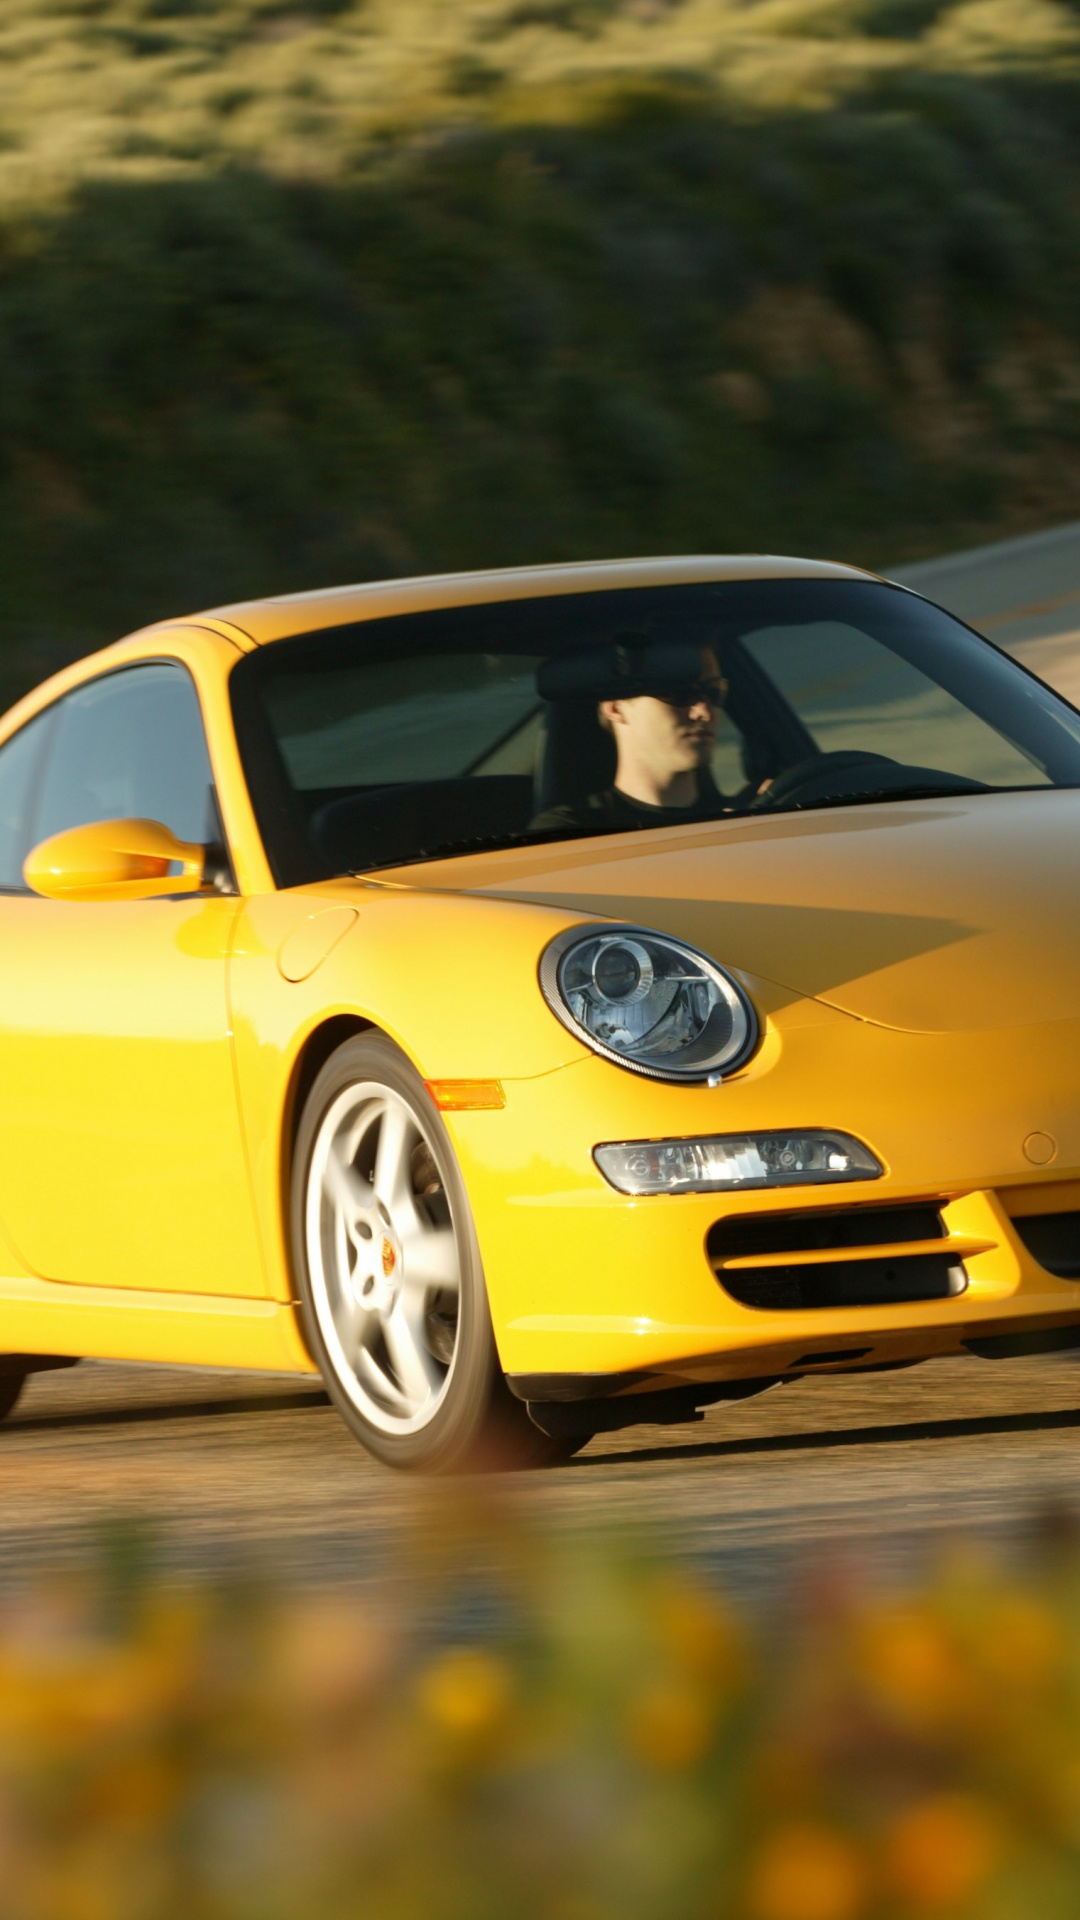 Porsche 911 Jaune Sur Route Pendant la Journée. Wallpaper in 1080x1920 Resolution